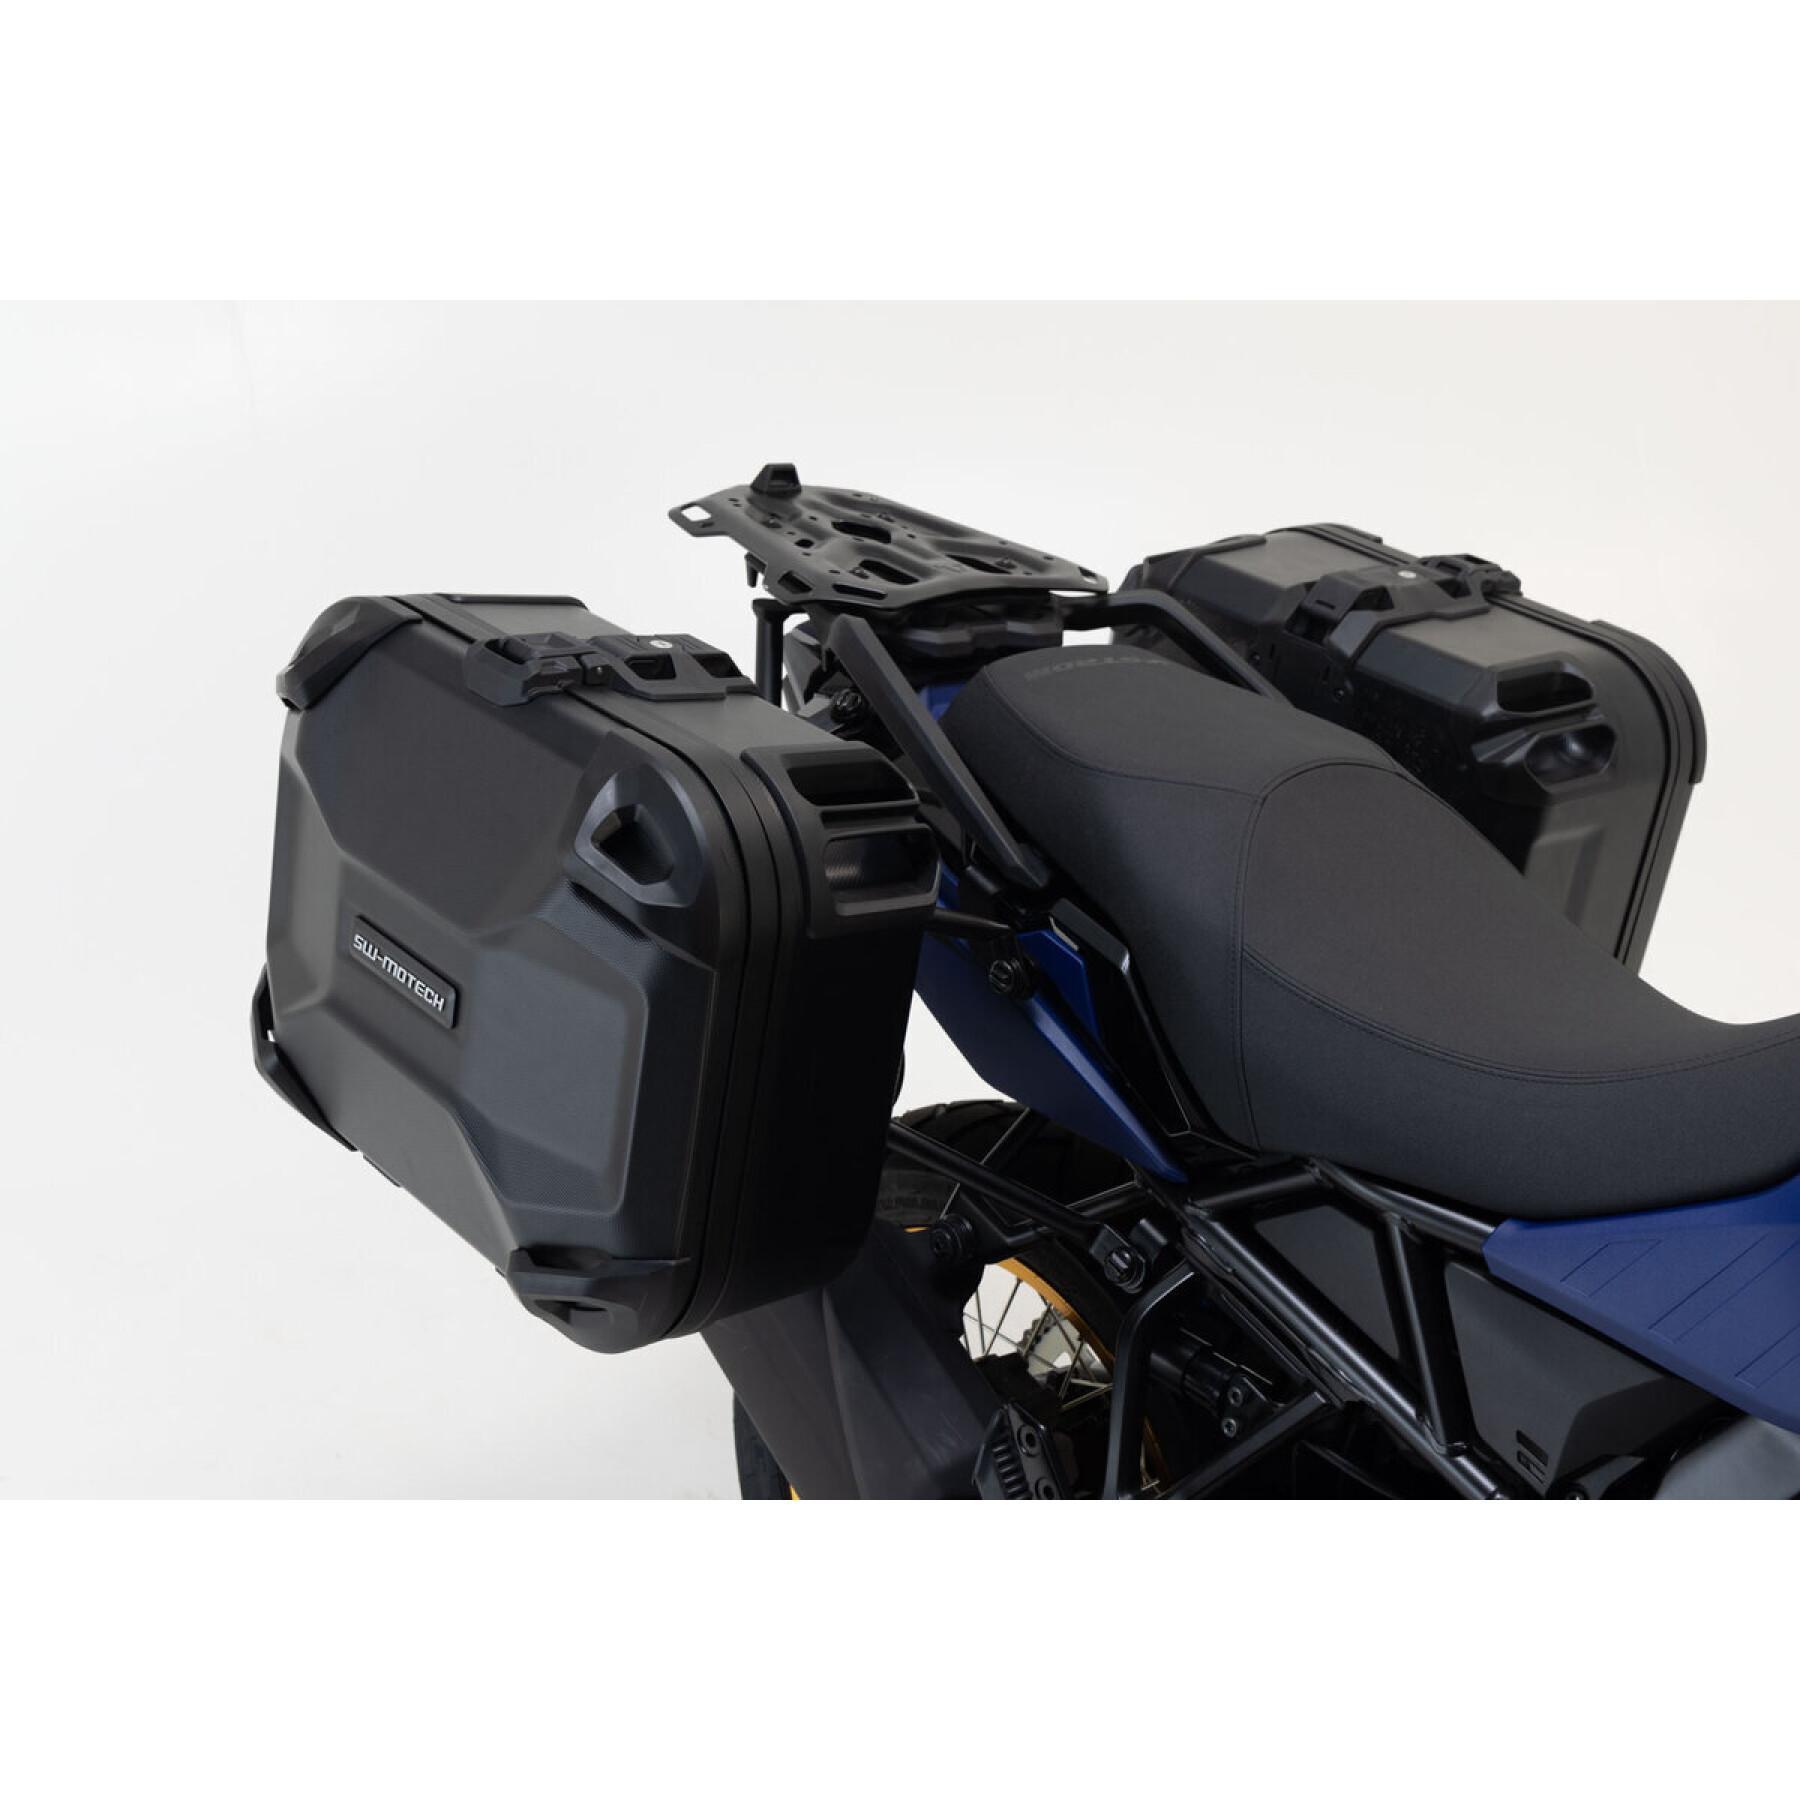 Rigid motorcycle side case system SW-Motech DUSC BMW S1000XR (15-19) 82 L